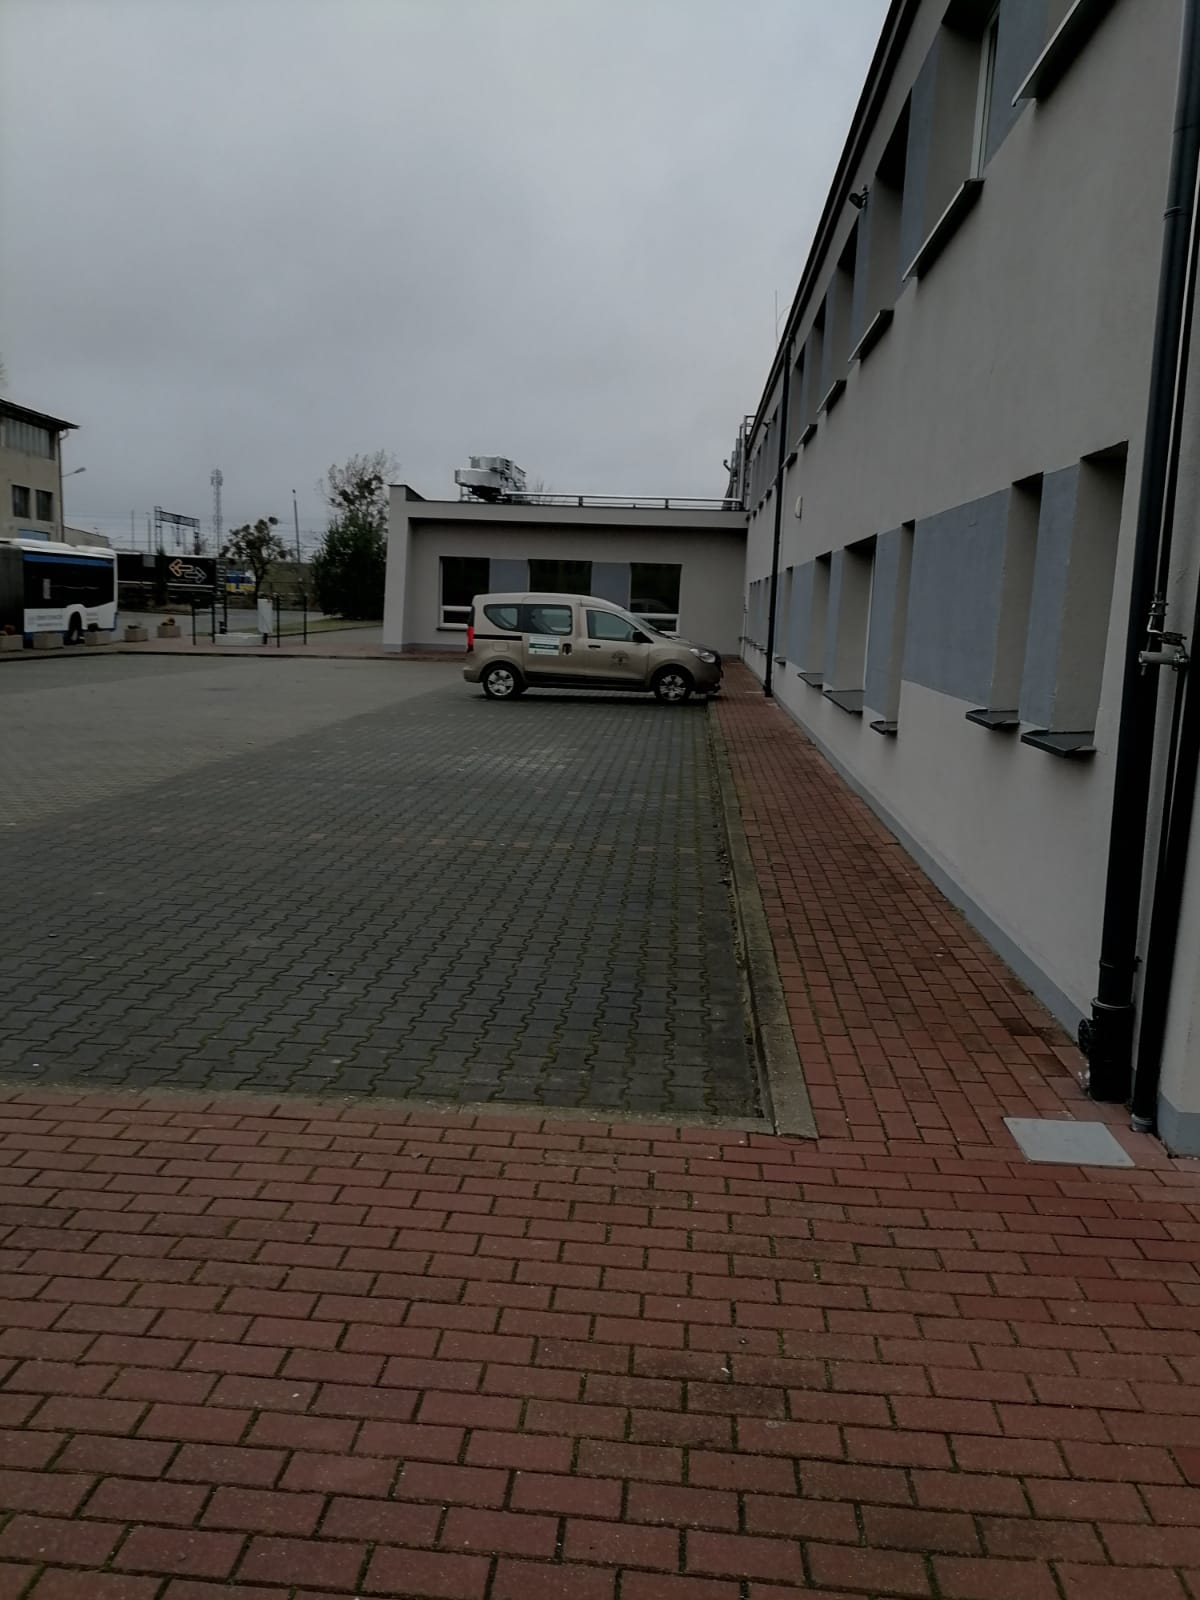 zdjęcia przedstawiają parking i plac przed Urzędem Gminy Wejherowo